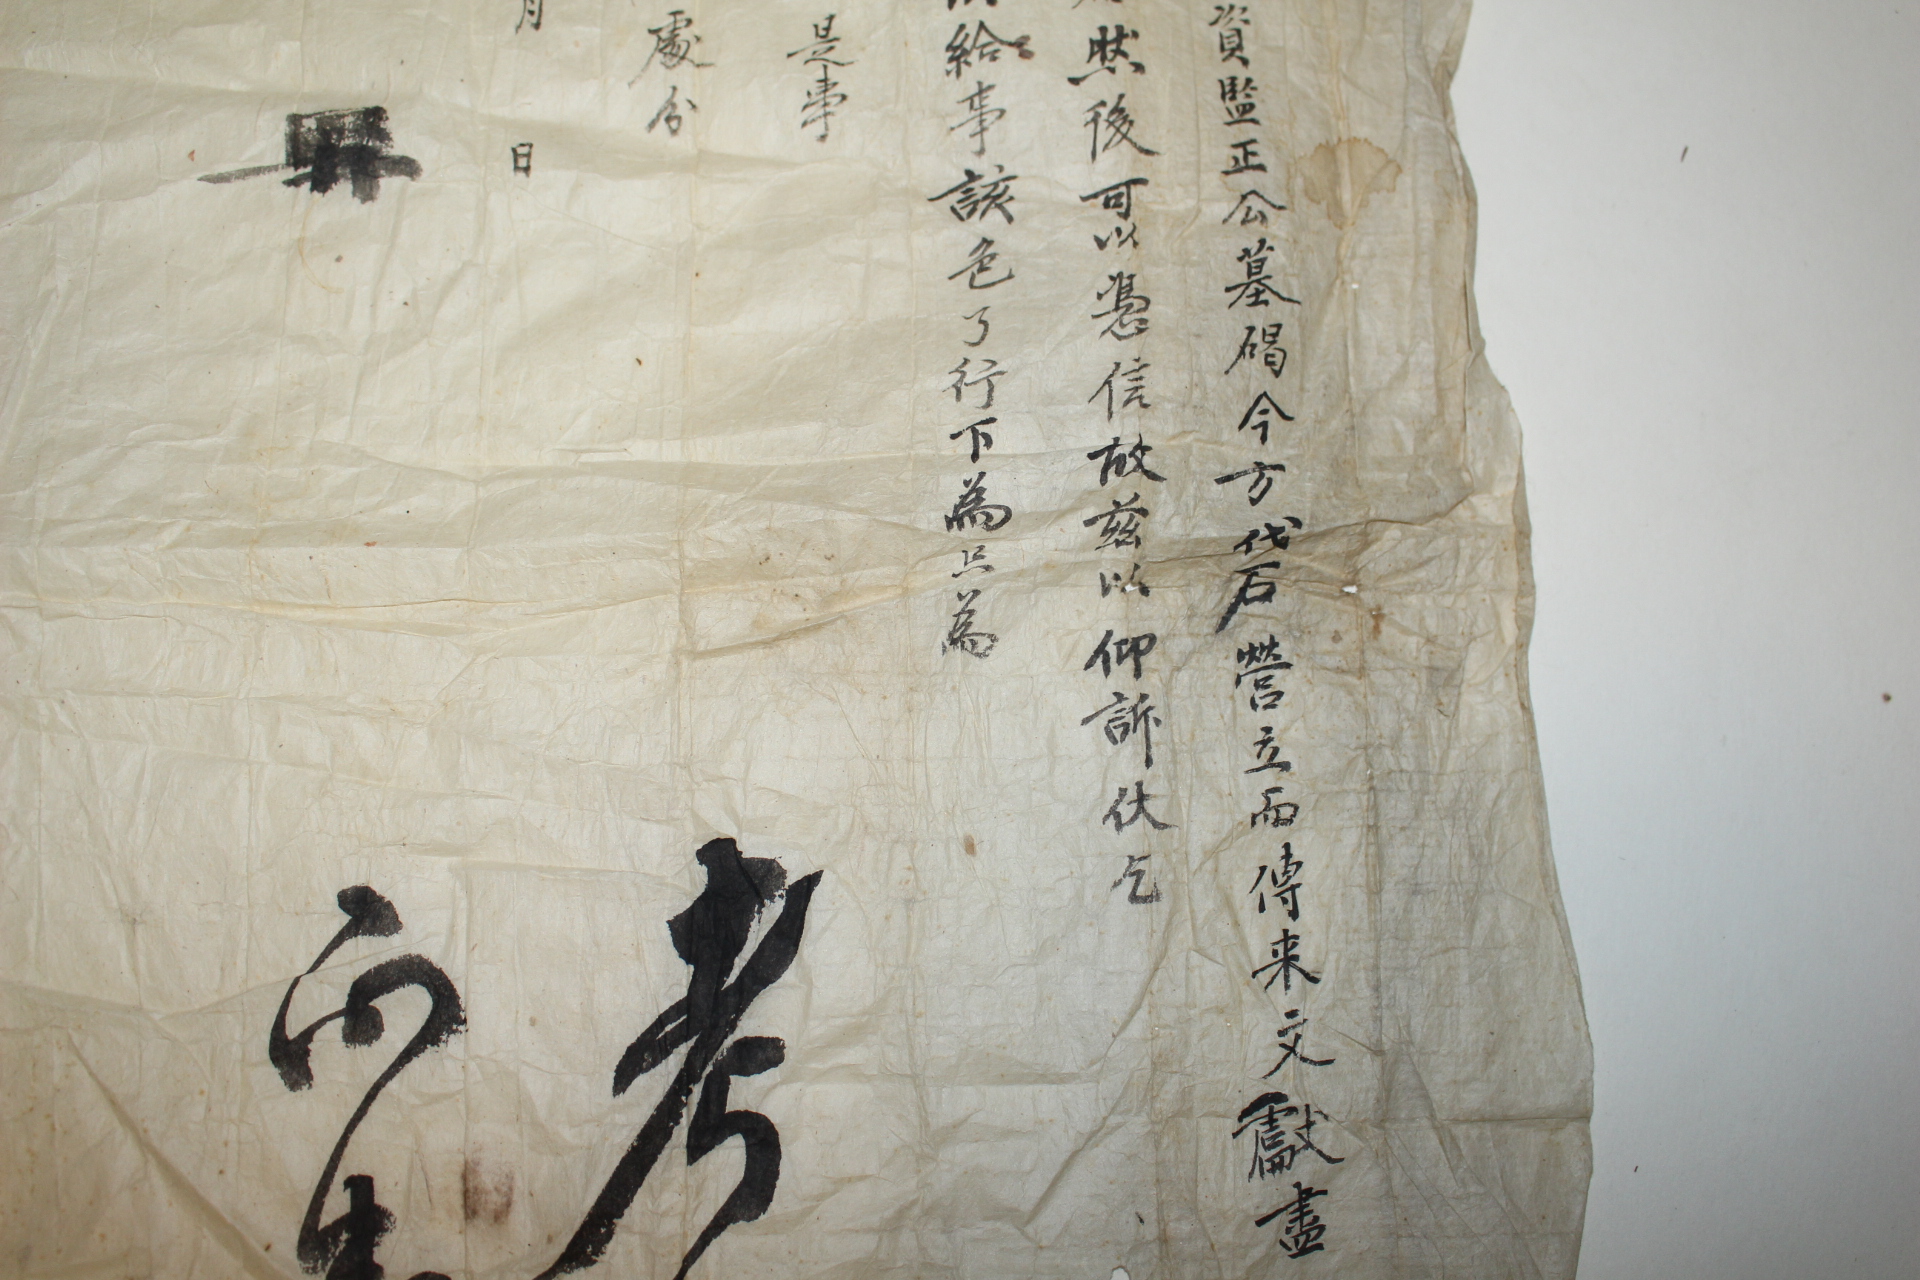 조선시대 허권(許權)의 칠대조는 군자감정을 역임했고 임란후 호구가 잘못되었다는 상소문